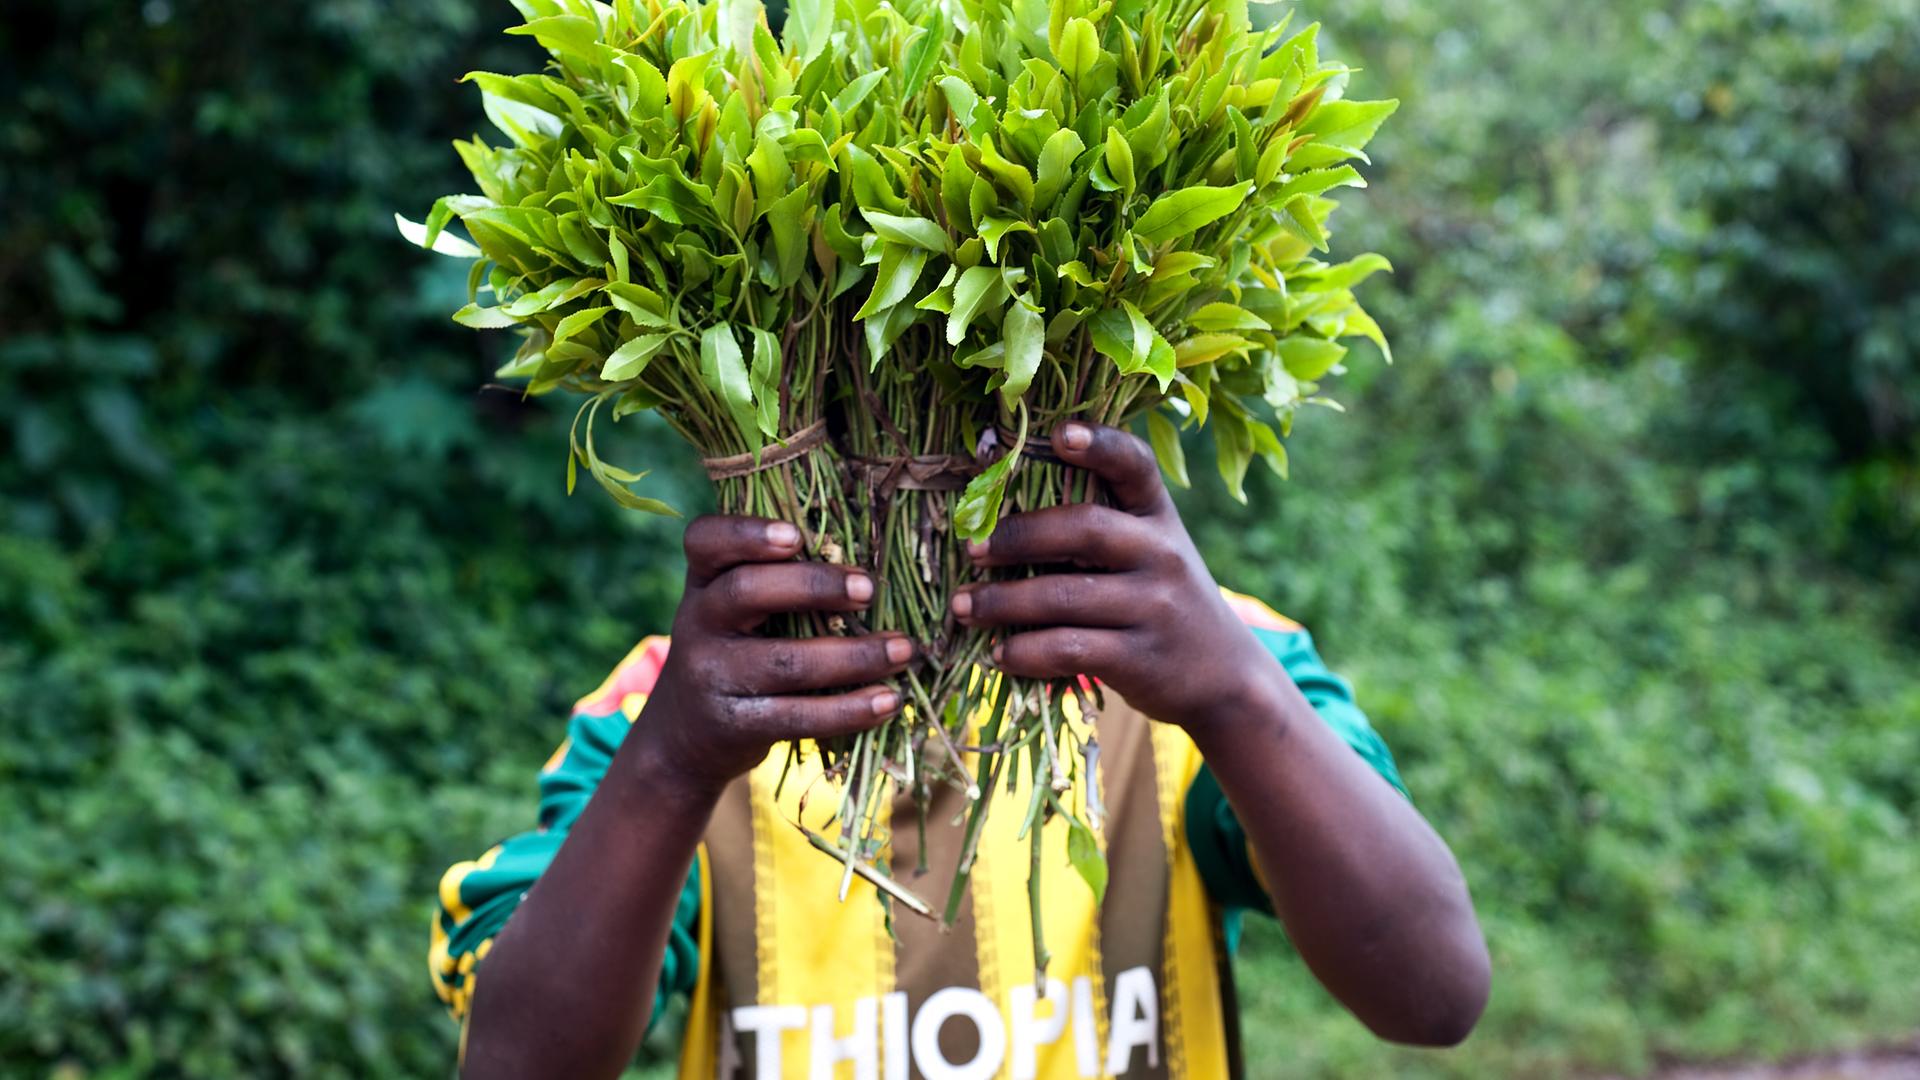 Ein Mensch mit einem T-Shirt, auf dem "Äthiopien" steht, hält ein paar geschnürte Büschel voller Blätter vors Gesicht.